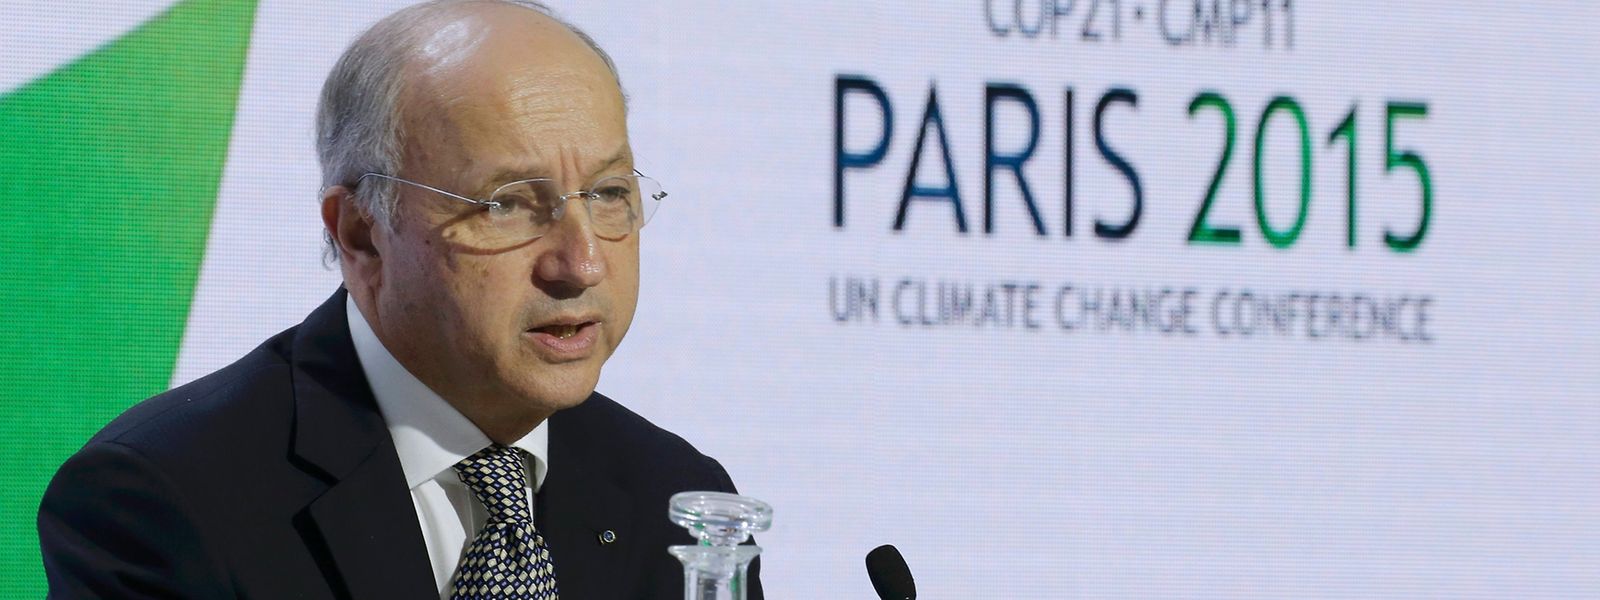 Viel Verhandlungsgeschick verlangt: Der französische Außenminister Laurent Fabius leitet die COP21.